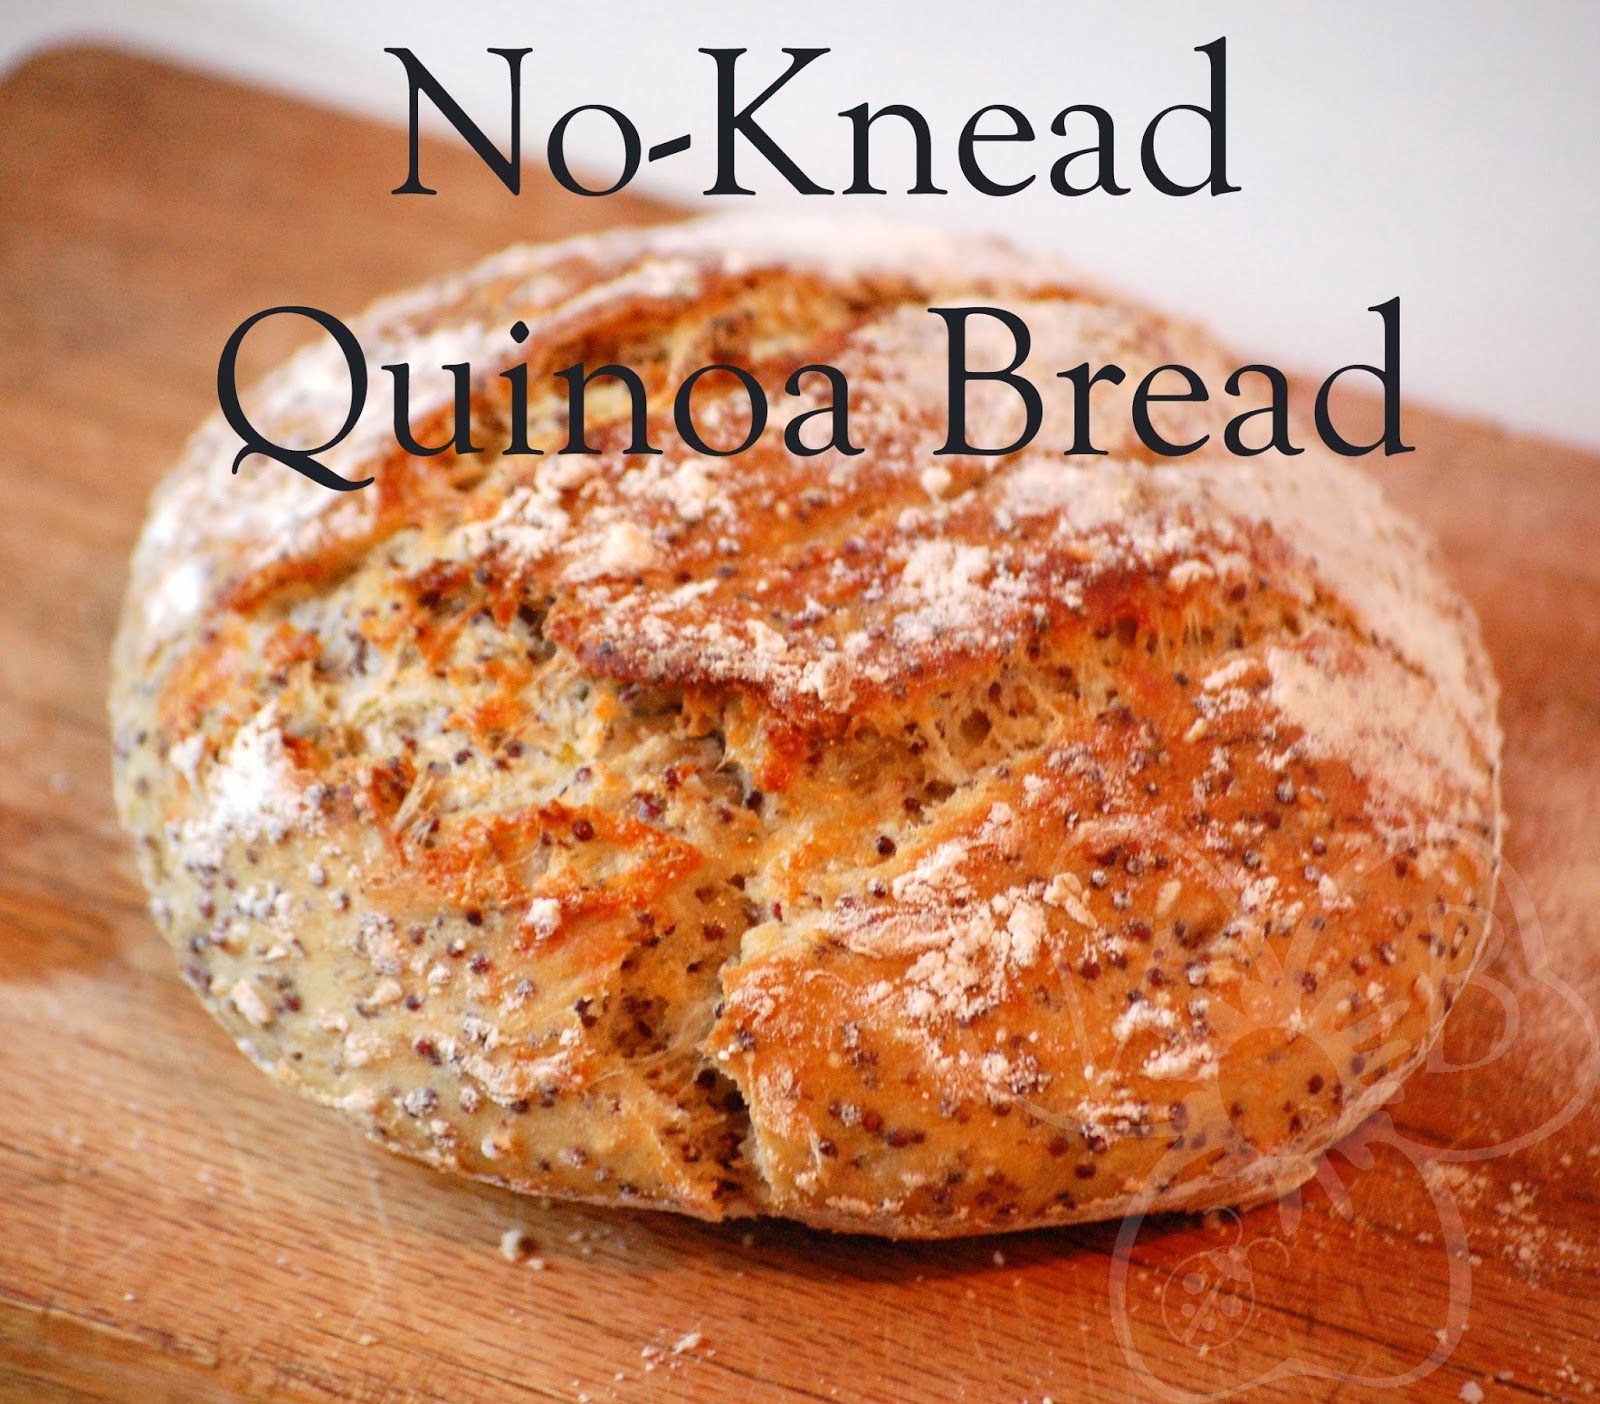 Violet's Buds: Whole Quinoa Bread Recipe